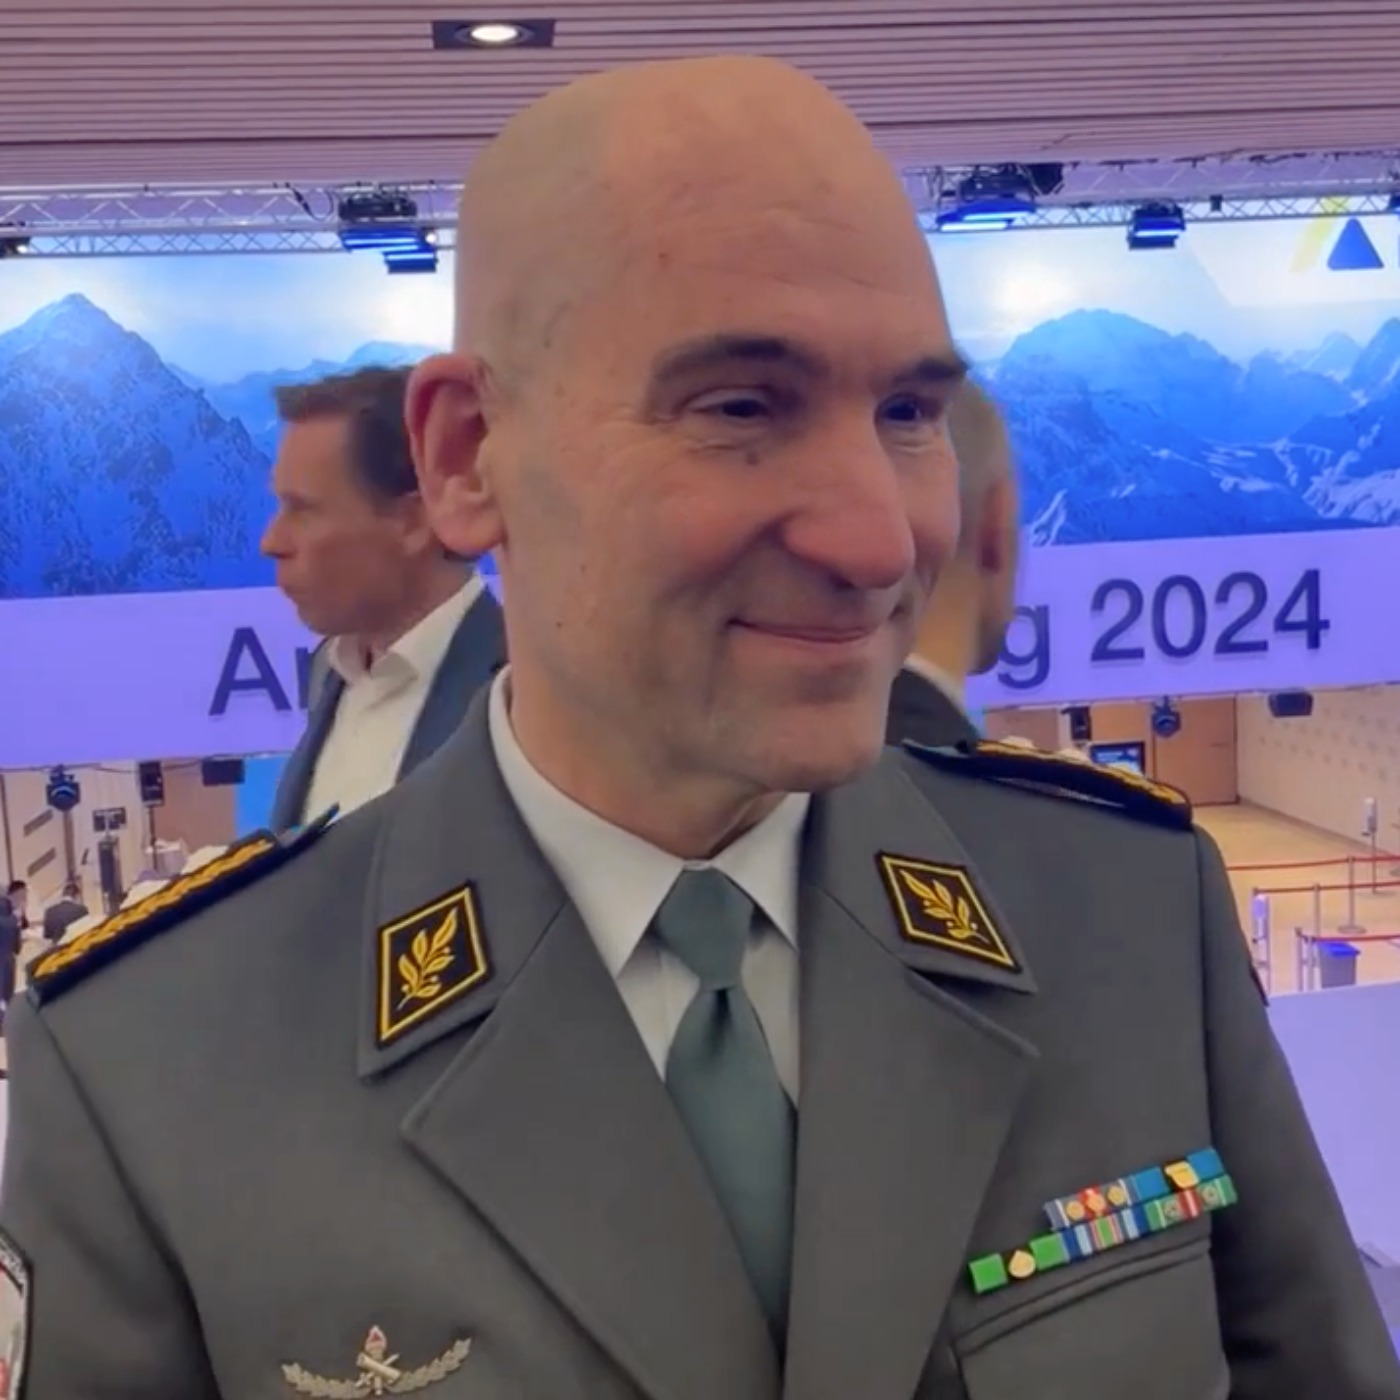 WEF-Spezial: Der Schweizer Armee-Chef Thomas Süssli über seine Erkenntnisse am World Economic Forum in Davos